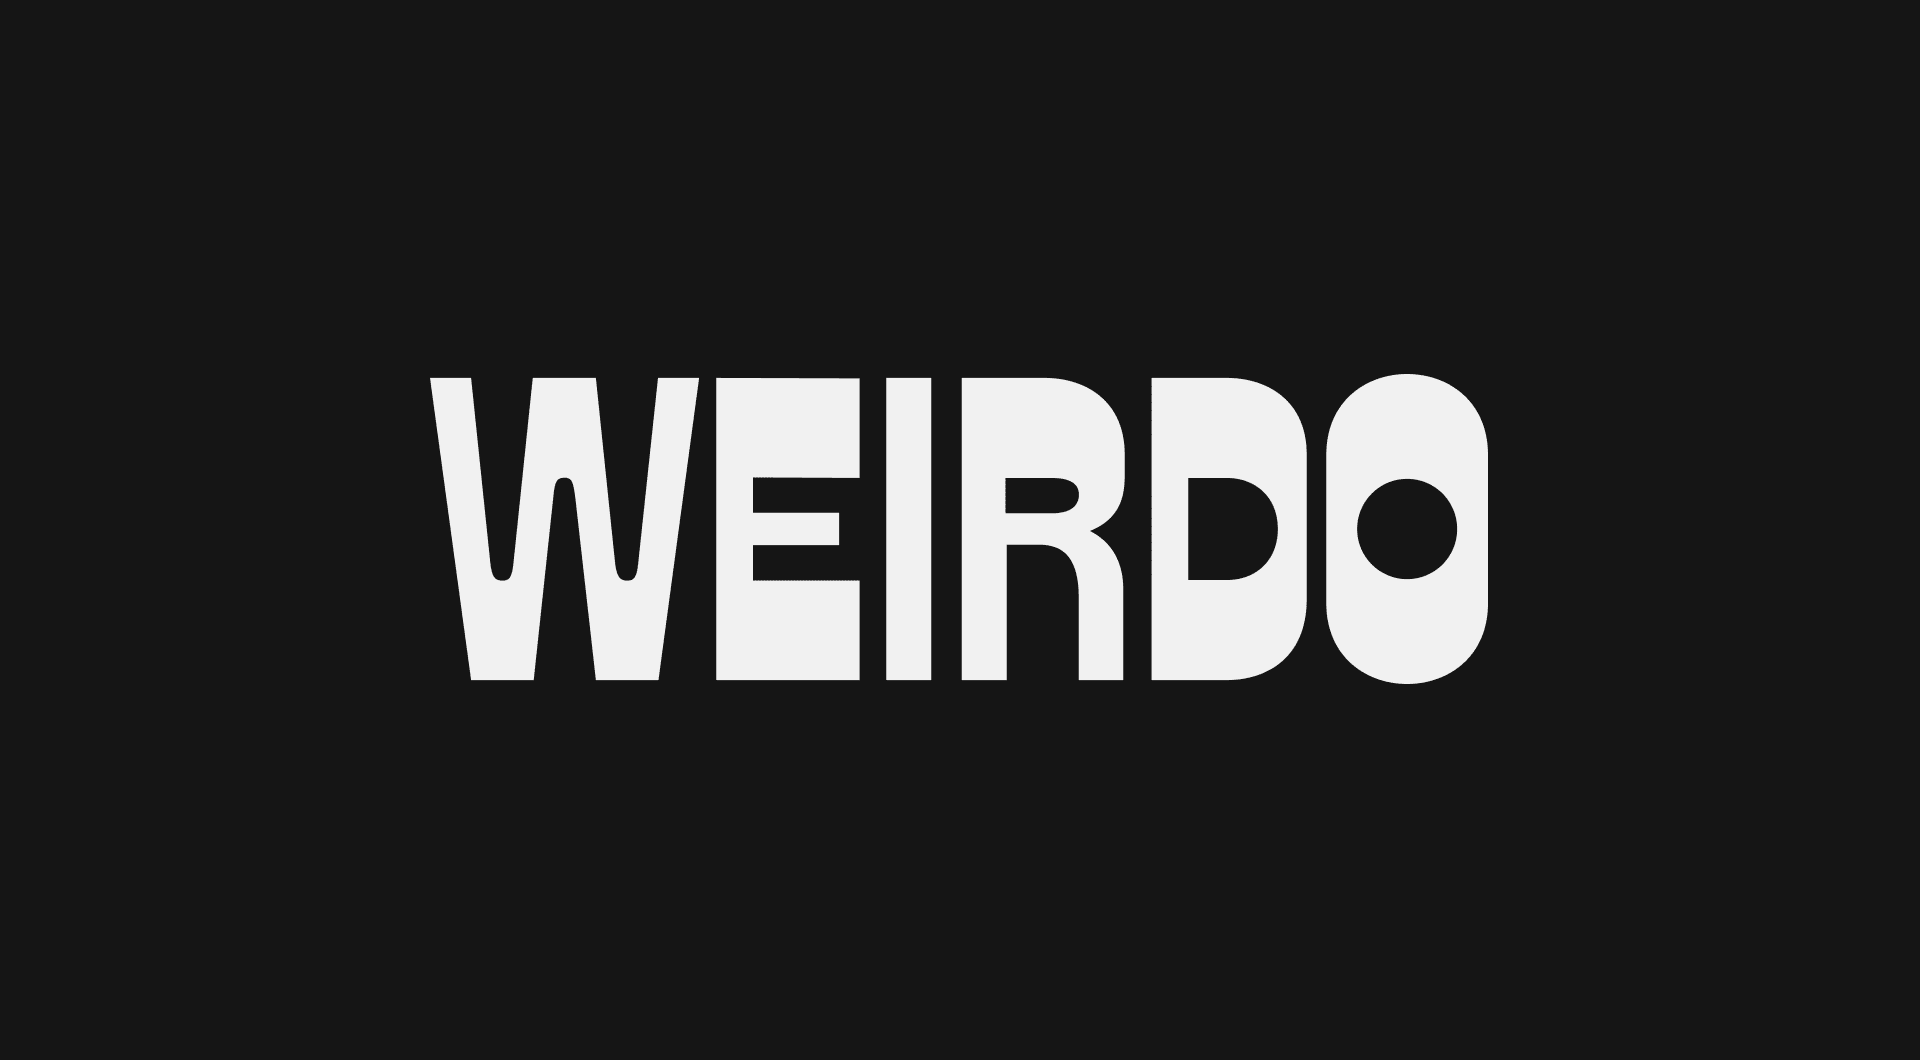 White text reading 'weirdo' on a black background